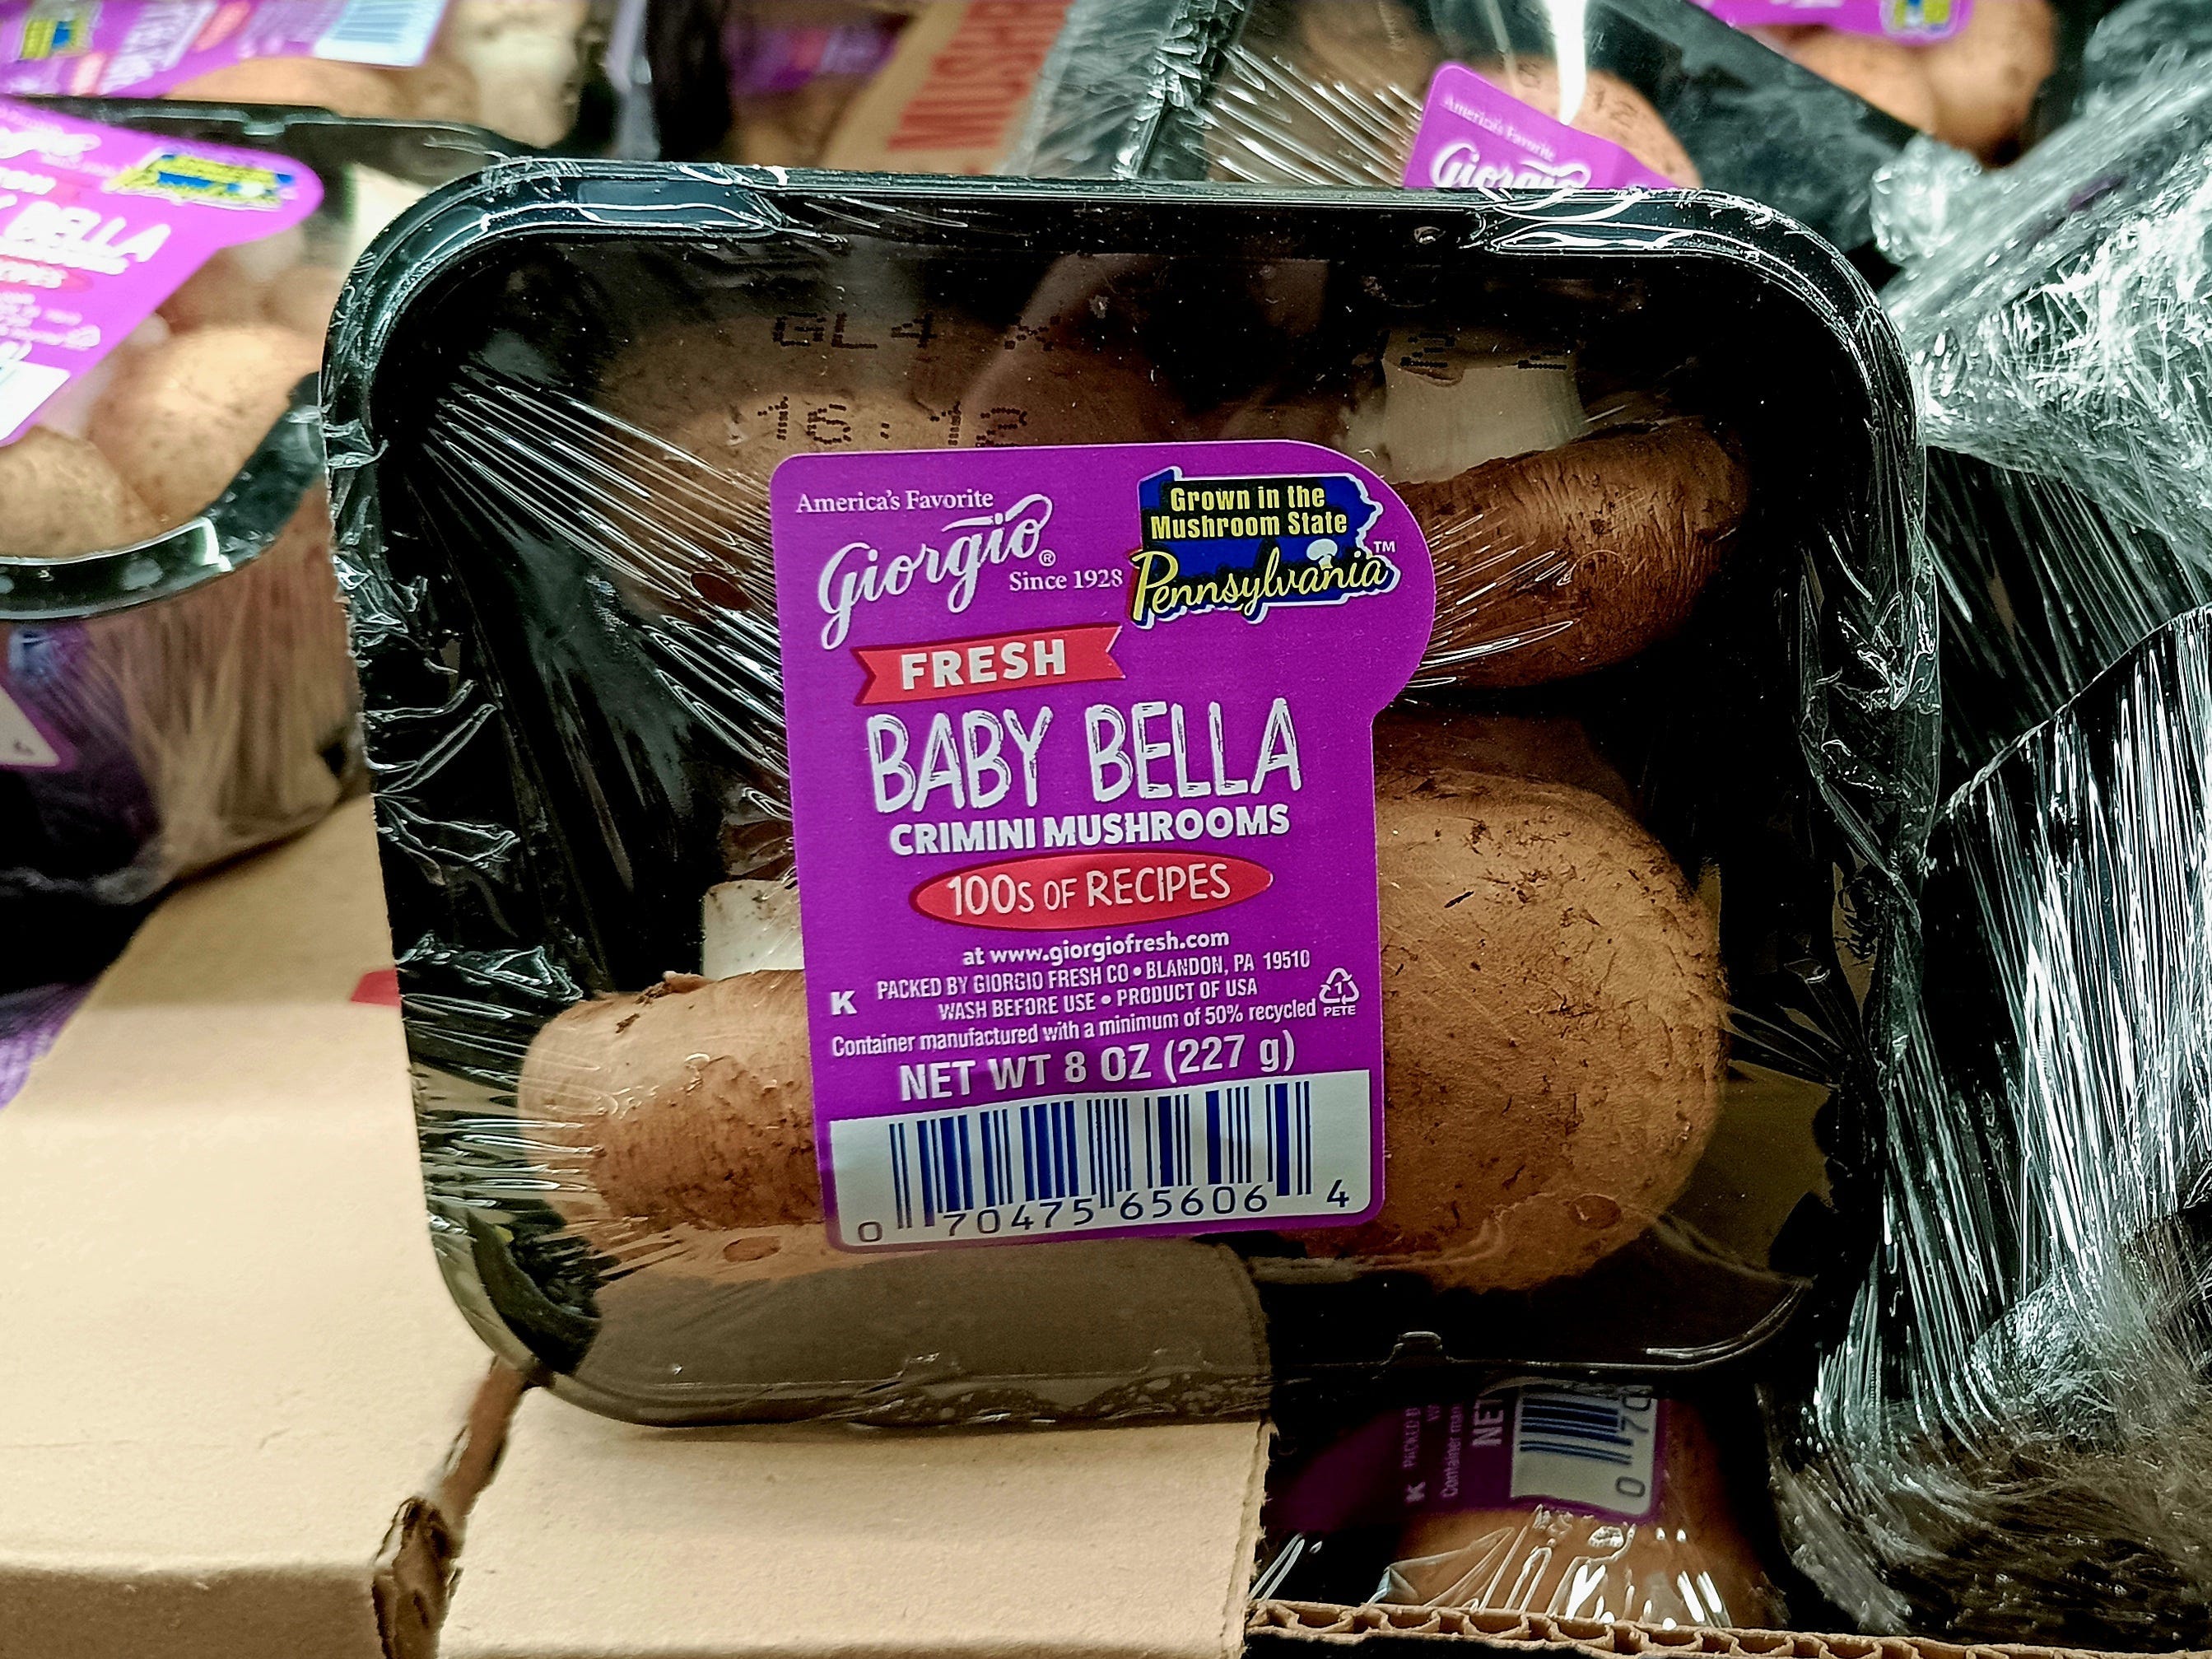 Baby-Bella-Pilze bei Aldi